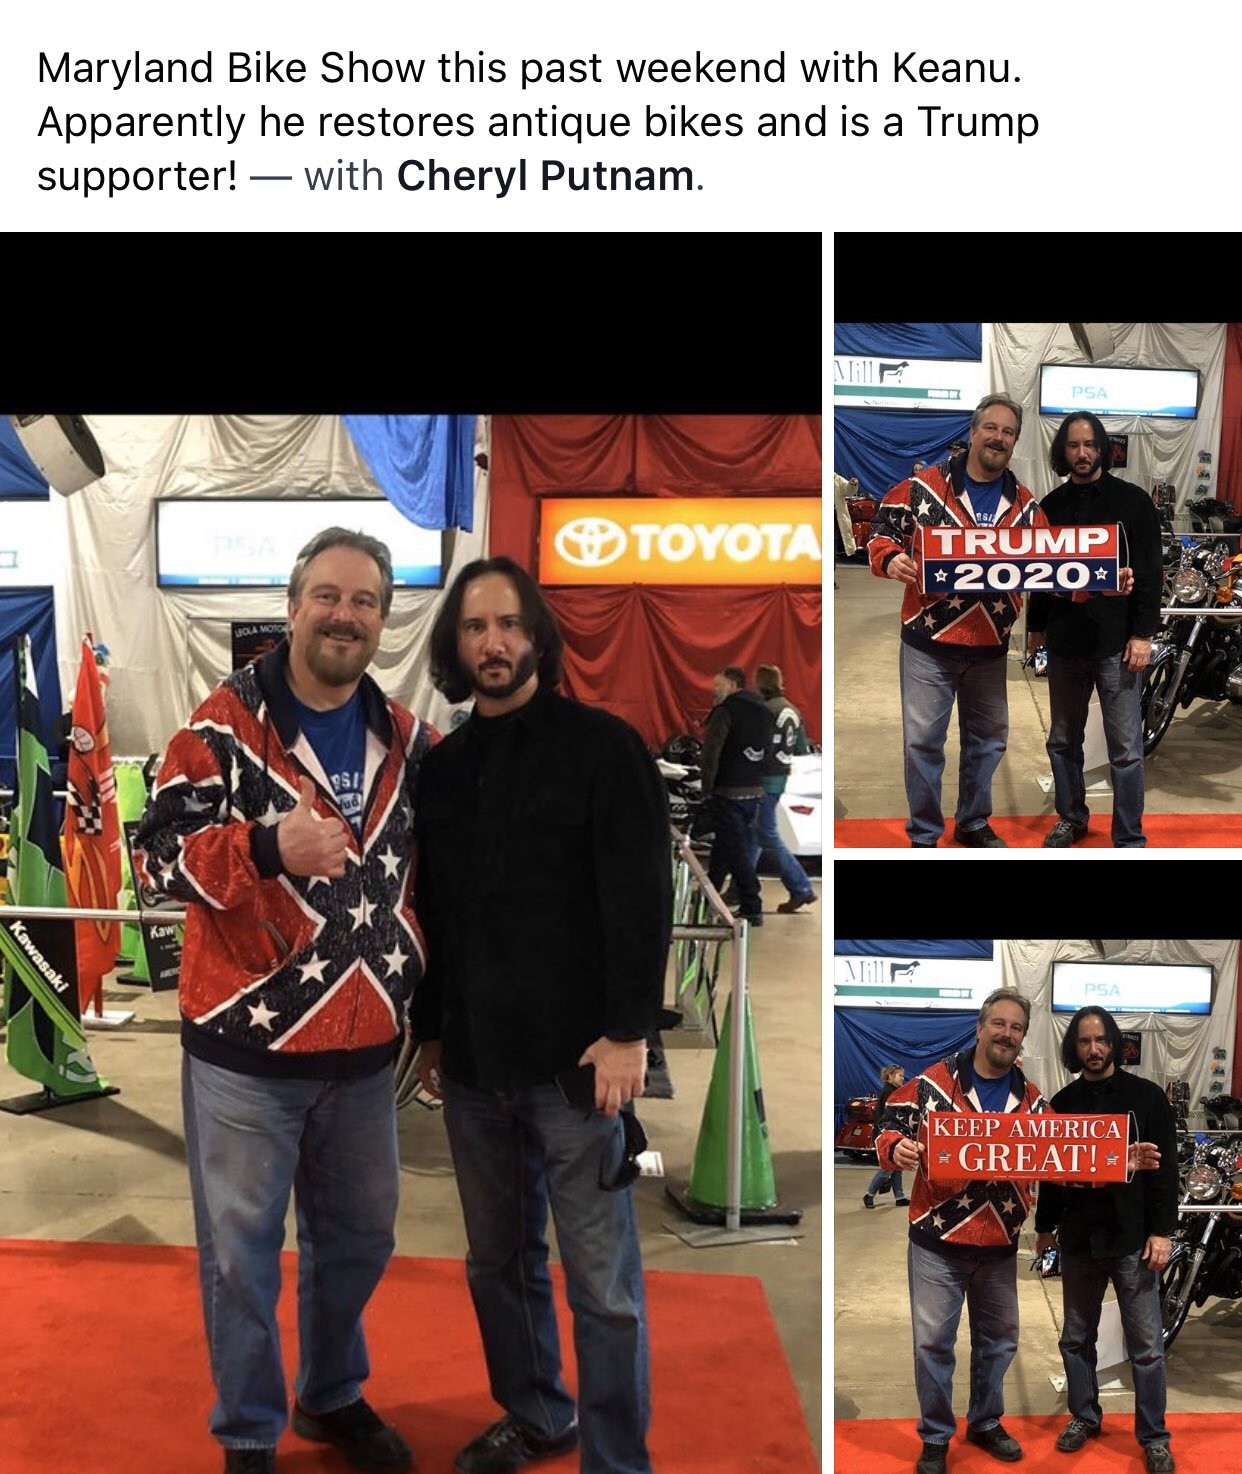 O post feito pelo apoiador de Donald Trump com as fotos do falso Keanu Reeves (Foto: Facebook)